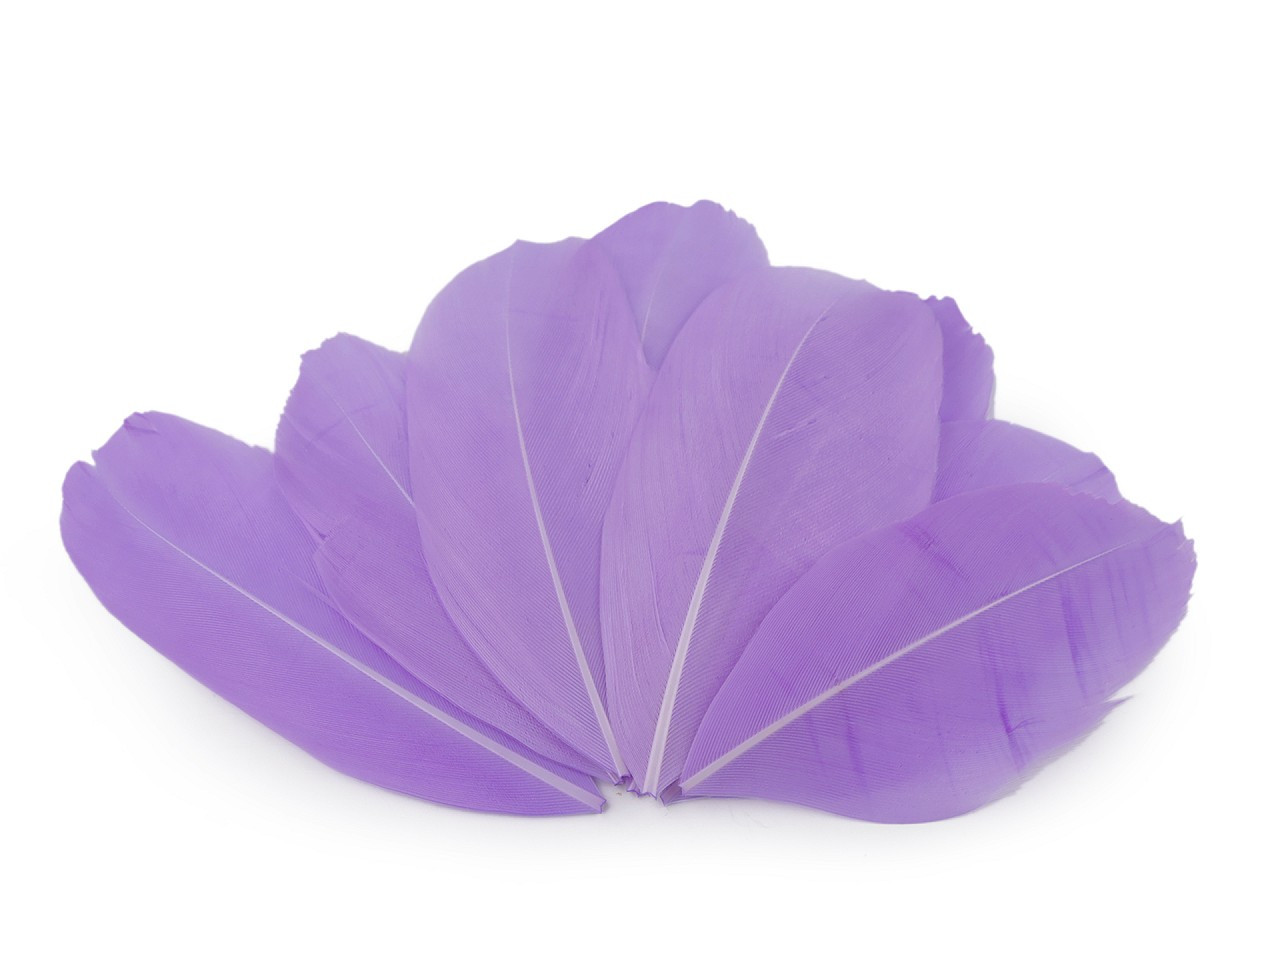 Husí peří délka 5,5-7 cm, barva 16 fialová lila